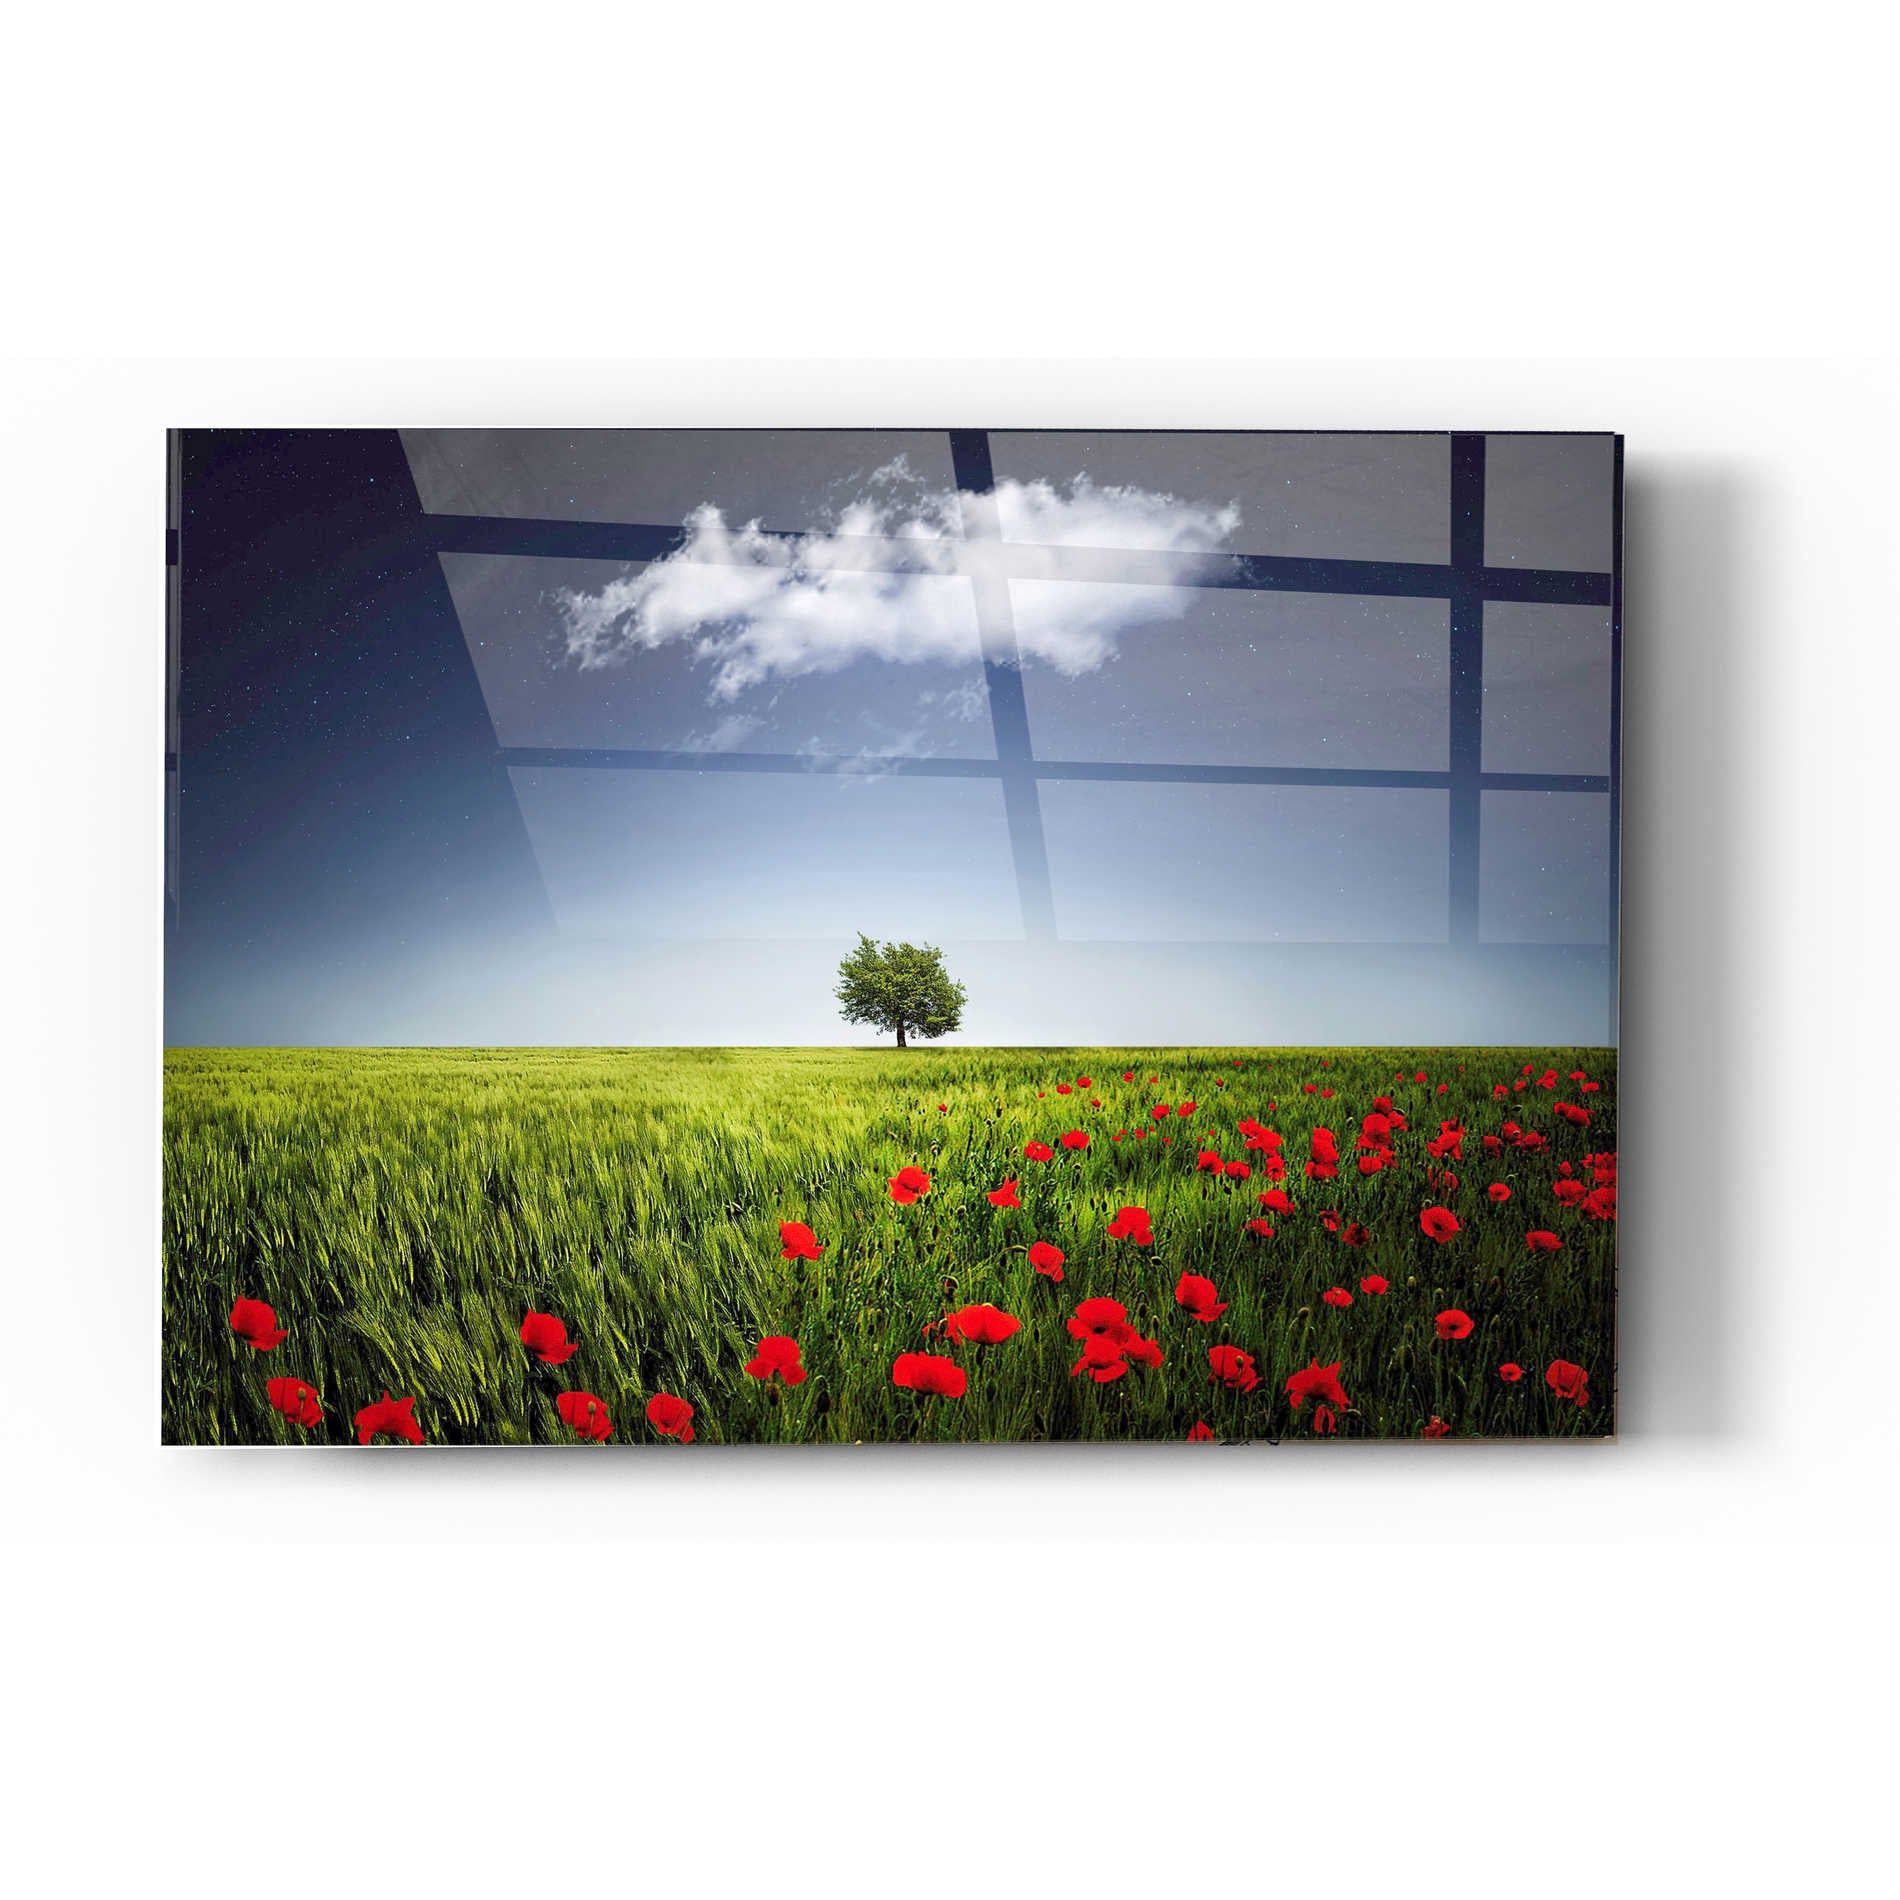 Epic Art "Lone Tree in a Poppy Field" Acrylic Glass Wall Art,16x24